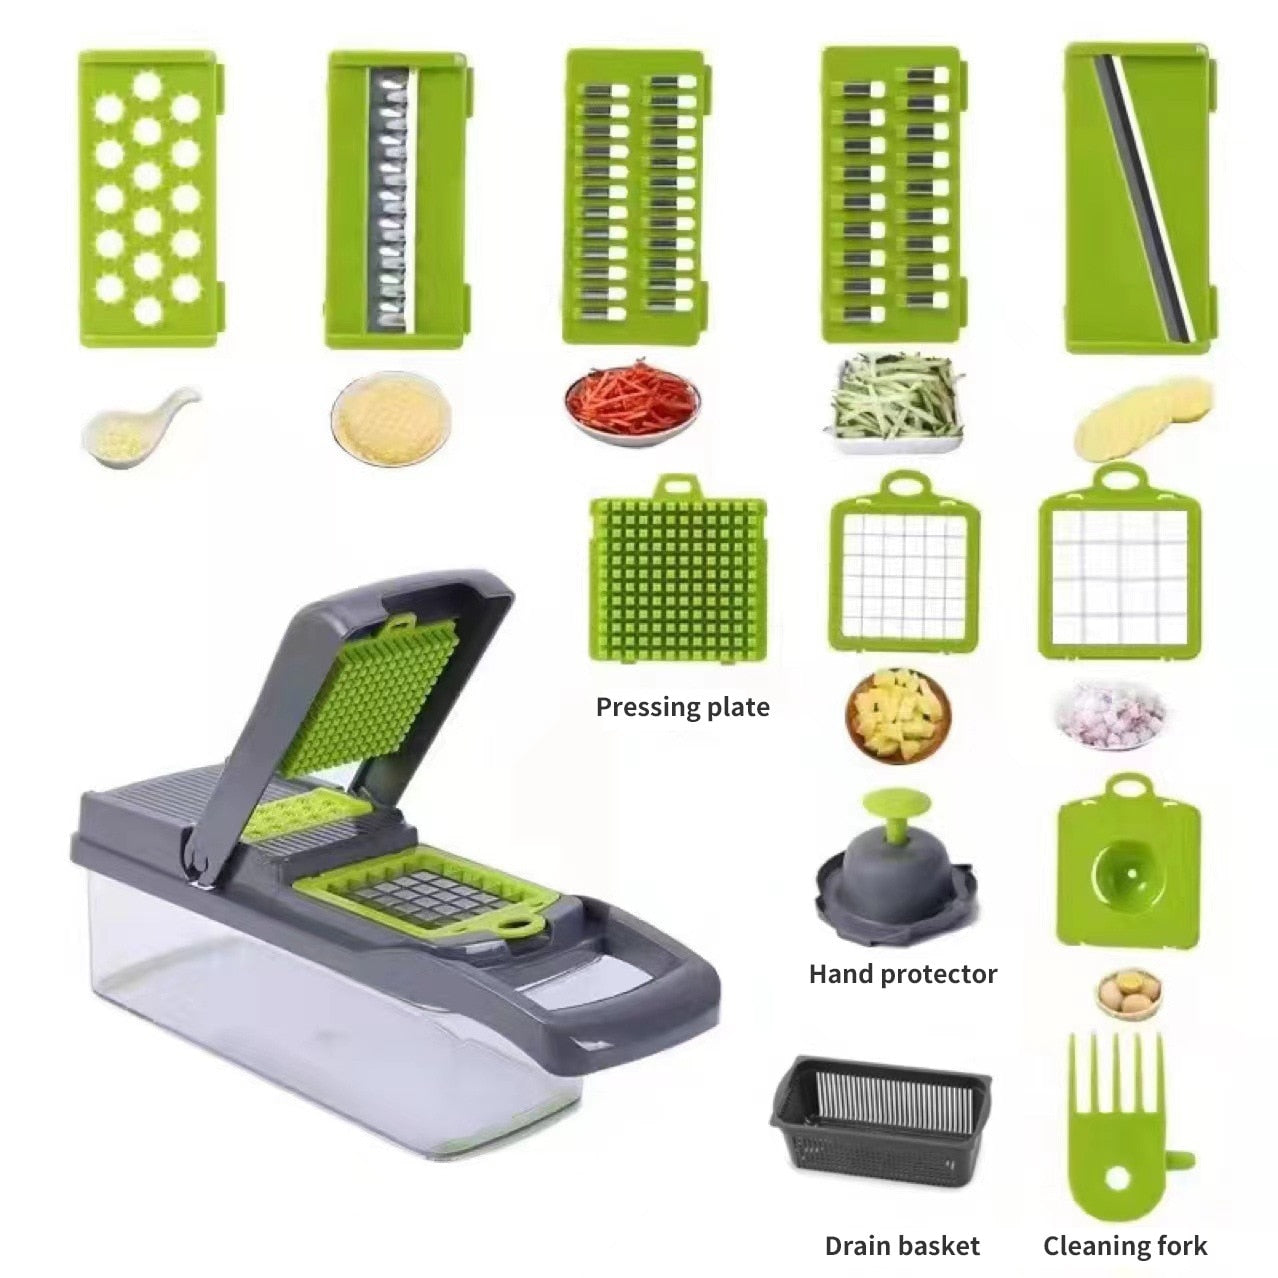 12 in 1 Multifunctional Vegetable Slicer Cutter Shredders Slicer With Basket Fruit Potato Chopper Carrot Grater